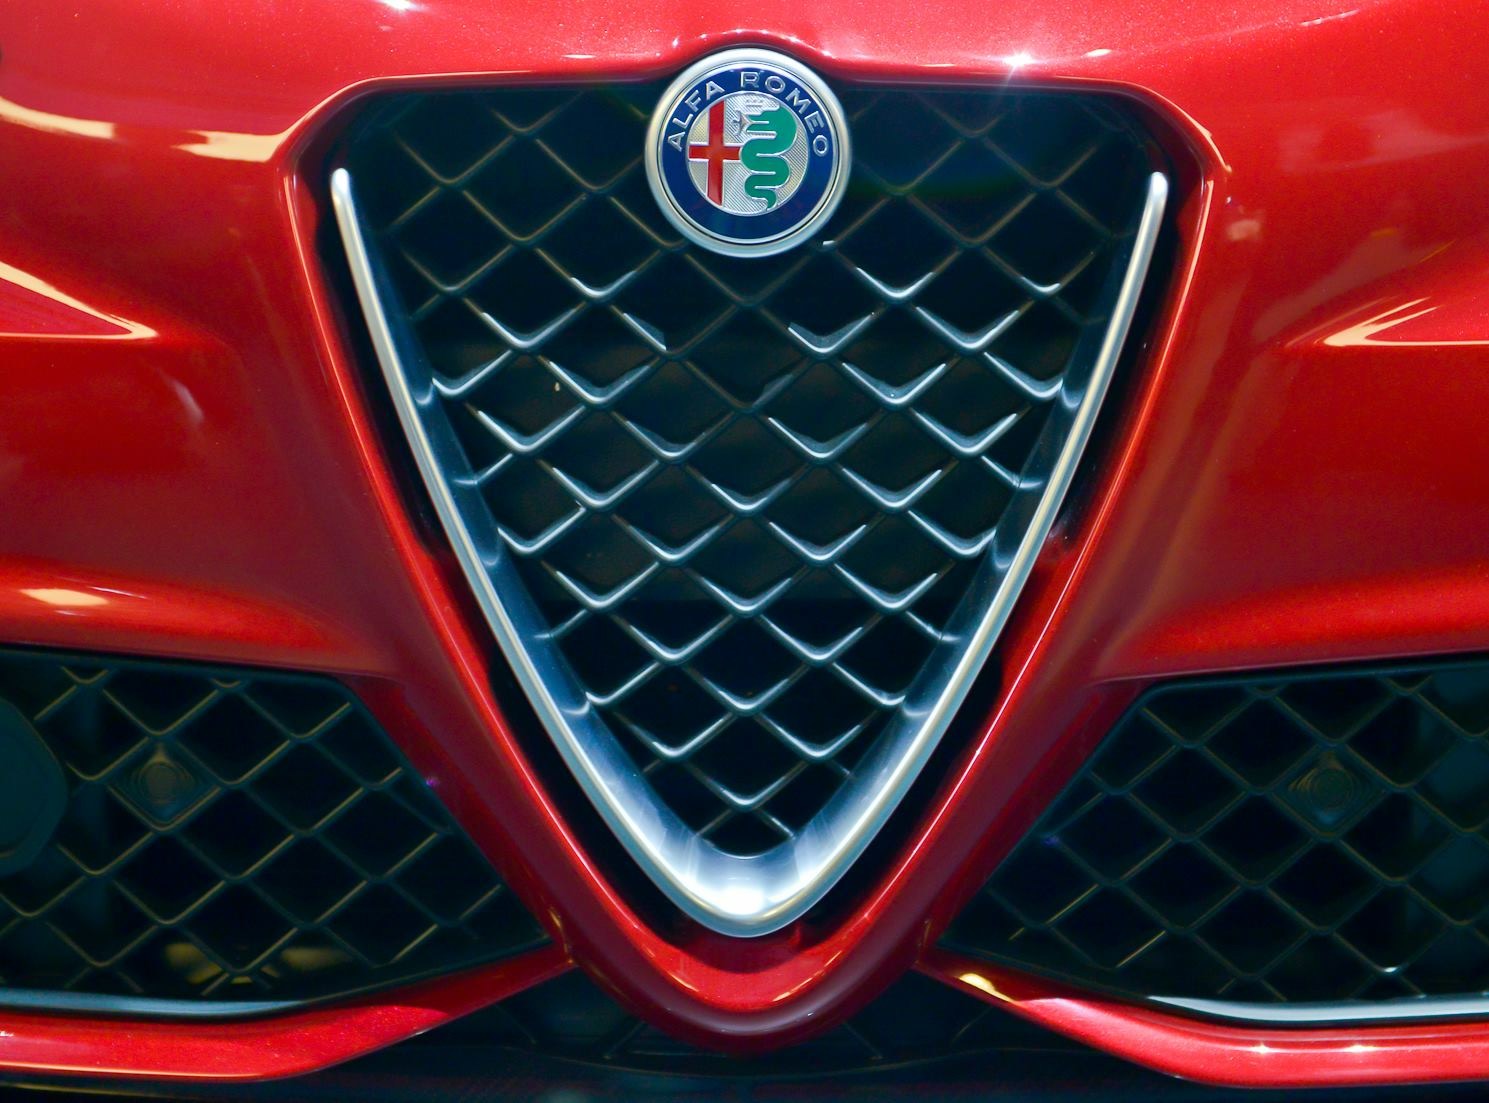 Alfa Romeo orta boy SUV Stelvio sonrası büyük boy bir SUV modeli piyasaya sürecek